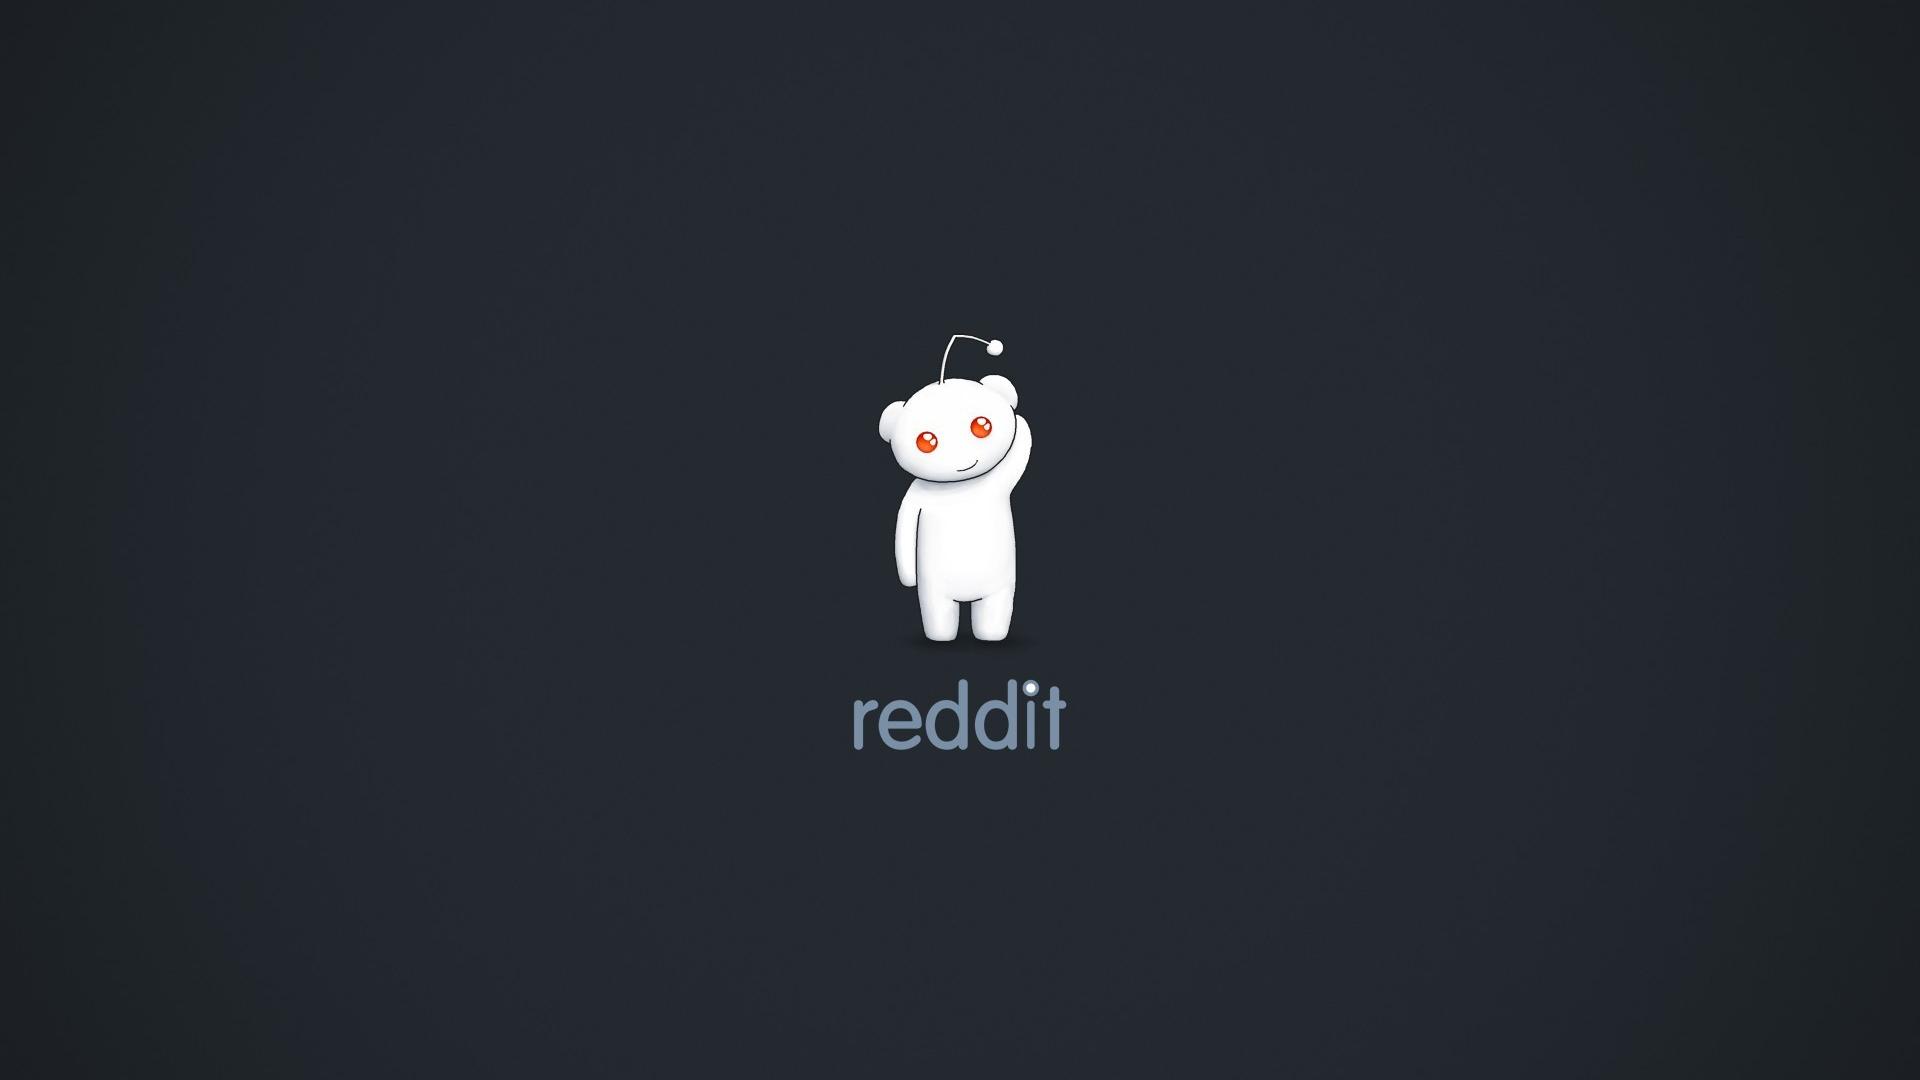 Hình nền Reddit là một cách tuyệt vời để truyền tải sự sáng tạo và cá tính của bạn. Chúng tôi có những hình nền Reddit độc đáo và đẹp mắt, sẵn sàng để bạn sử dụng và chia sẻ với cộng đồng Reddit.